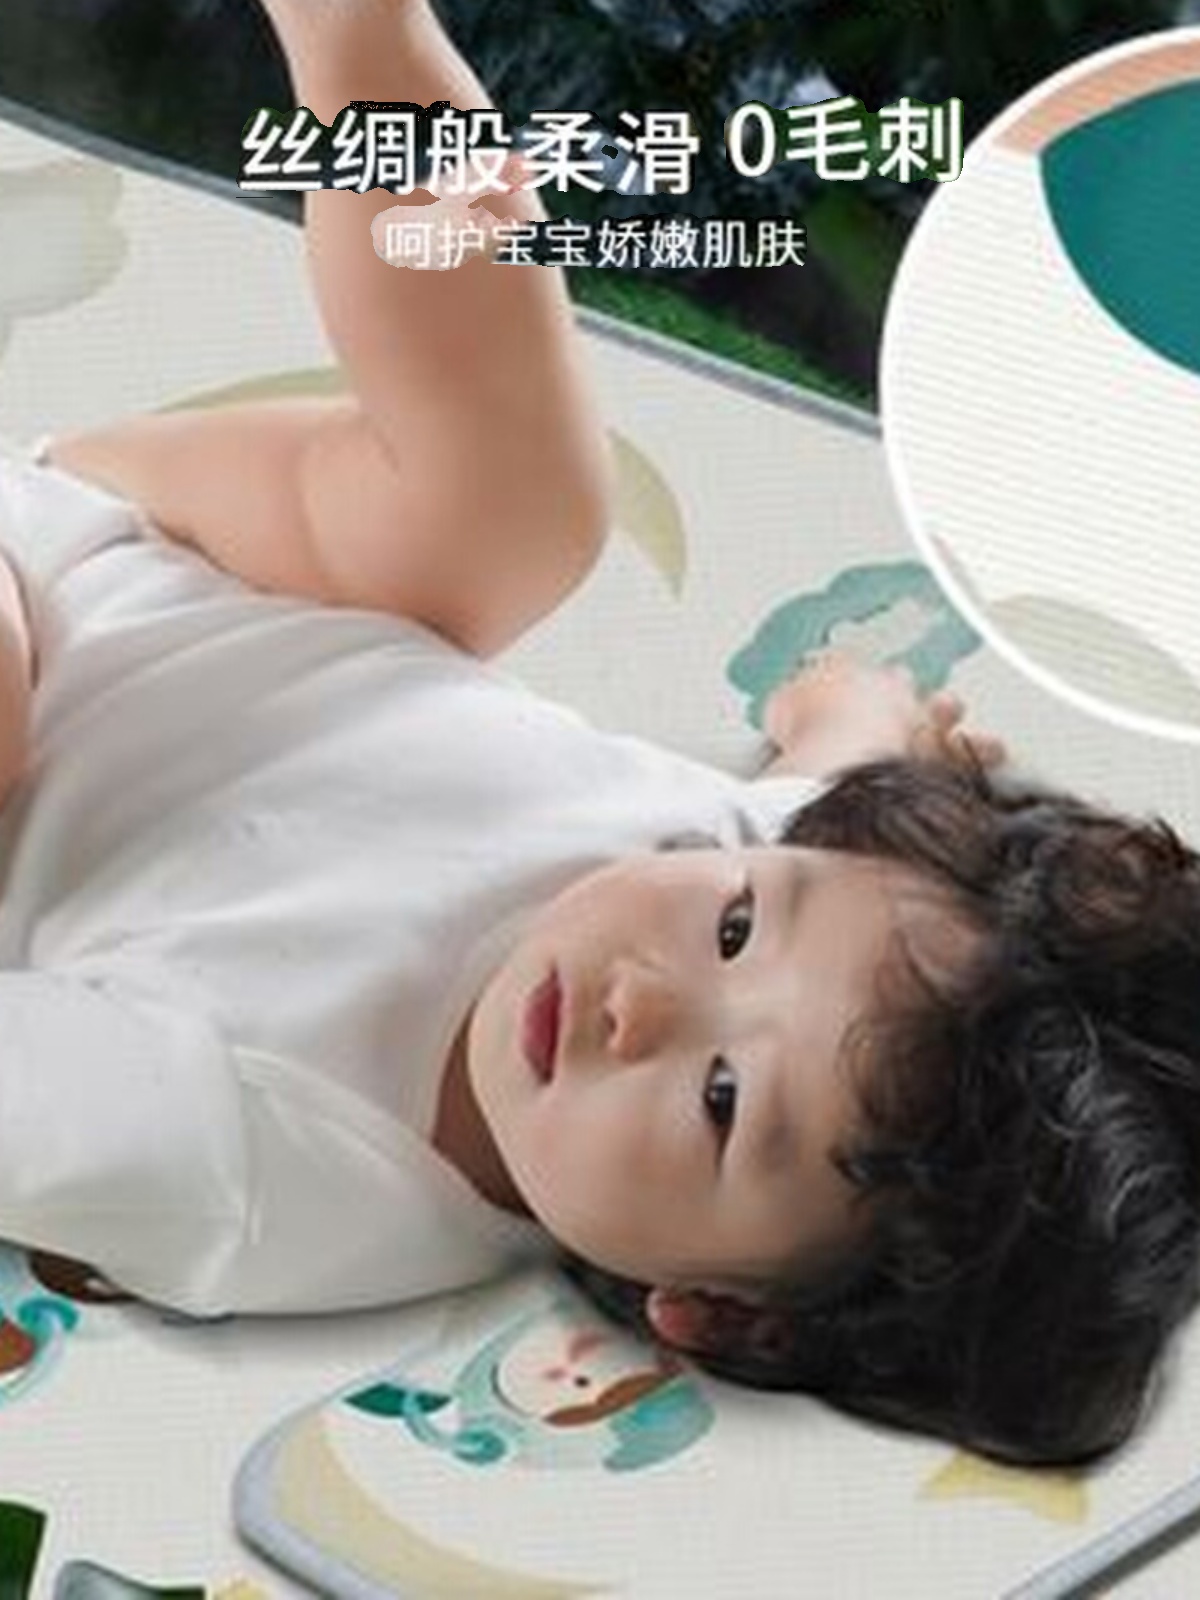 新款婴幼儿童冰丝凉席透气吸汗防螨宝宝新生儿童床垫凉席夏幼儿园